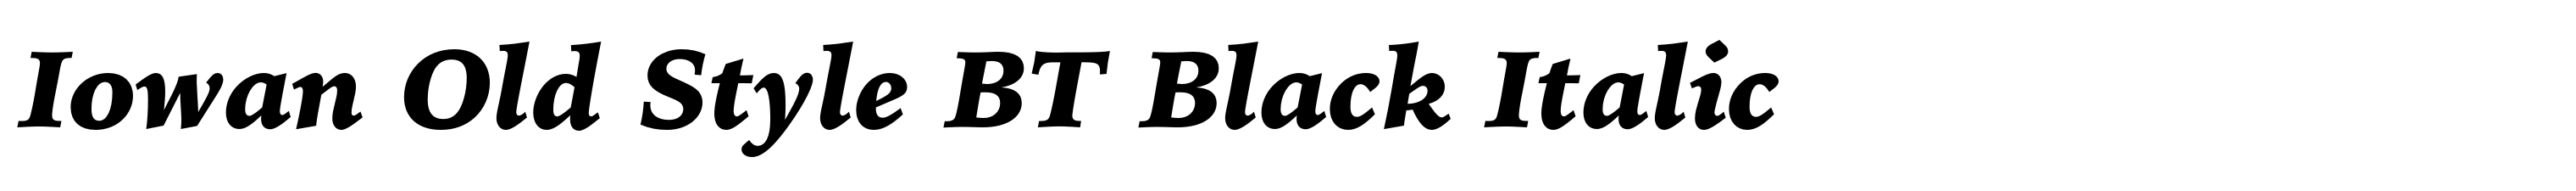 Iowan Old Style BT Black Italic